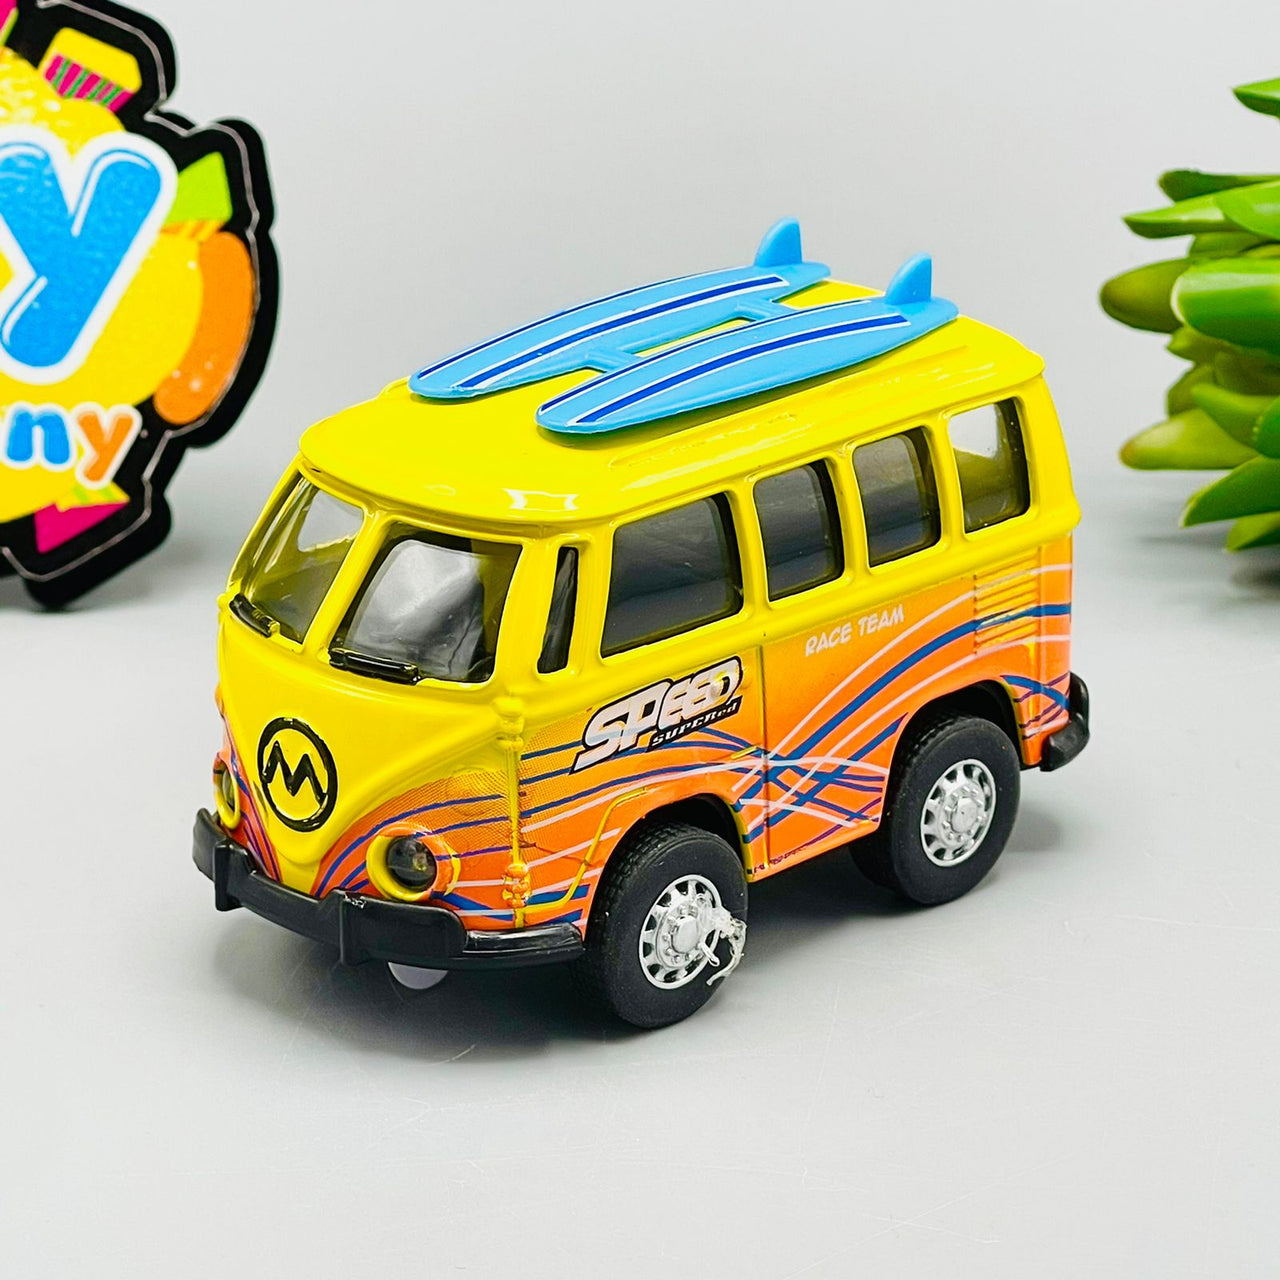 1:36 Diecast Volkswagen Bus Toy